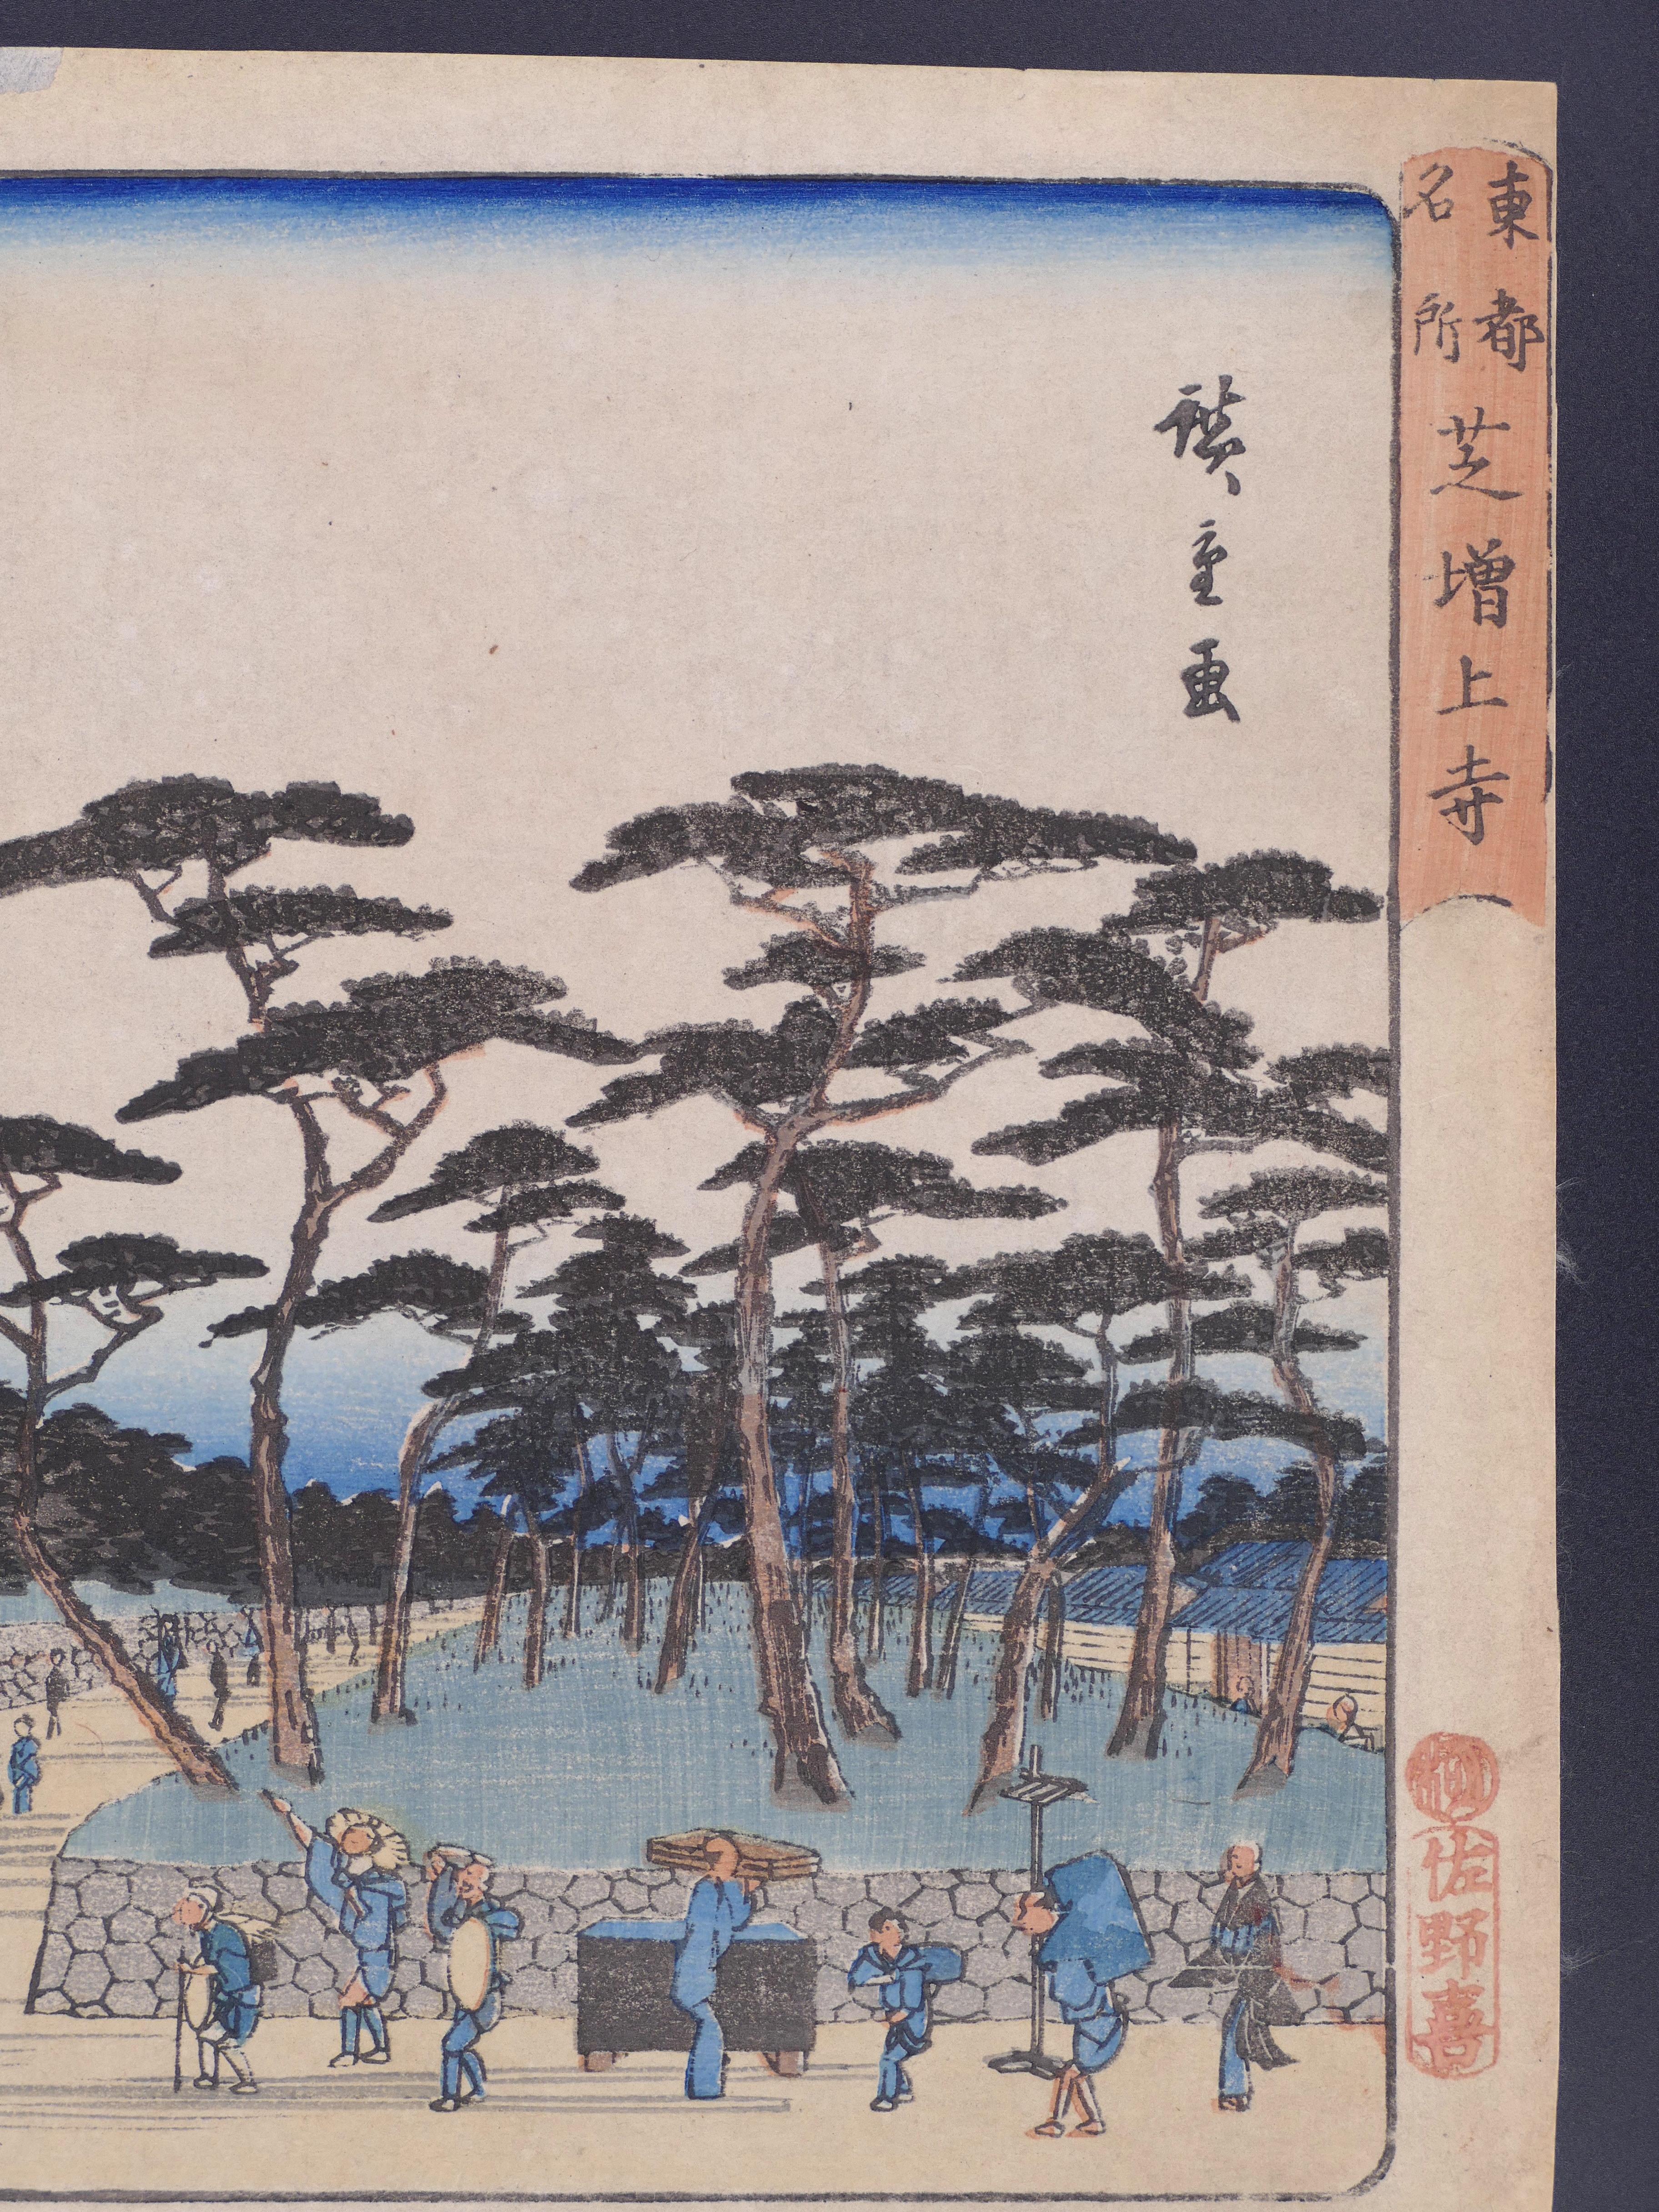 View of Zojo-ji Temple in Shiba - by Hiroshige Utagawa - 1850s - Print by Utagawa Hiroshige (Ando Hiroshige)